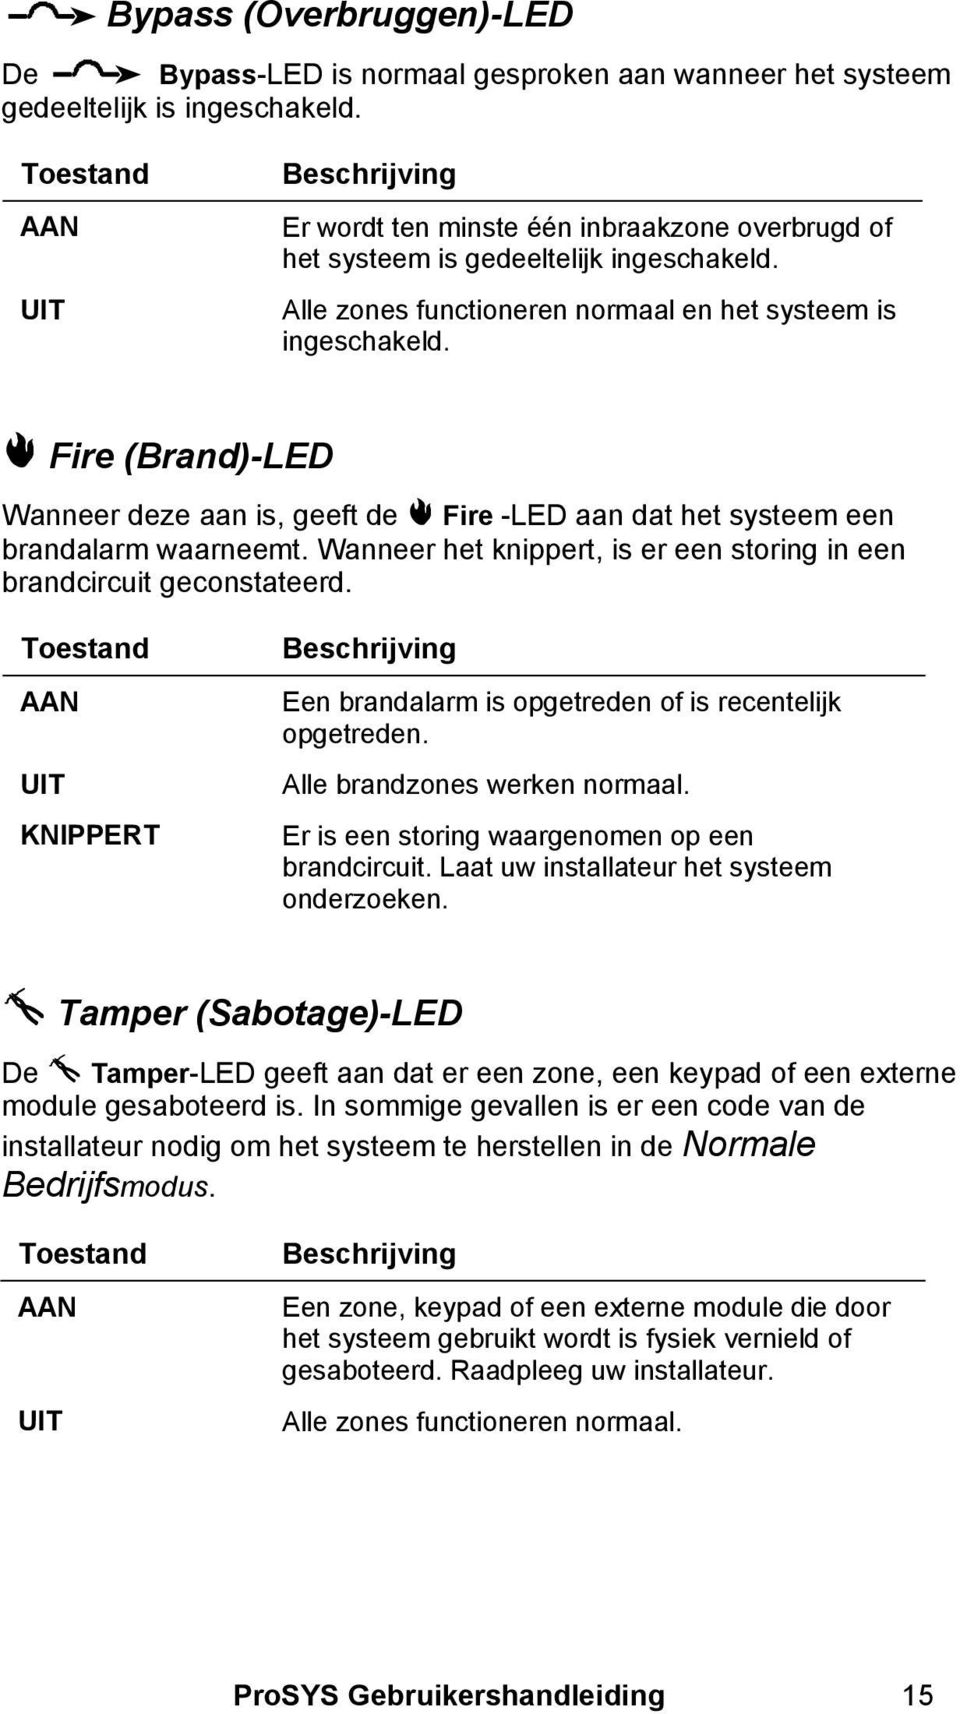 Fire (Brand)-LED Wanneer deze aan is, geeft de Fire -LED aan dat het systeem een brandalarm waarneemt. Wanneer het knippert, is er een storing in een brandcircuit geconstateerd.